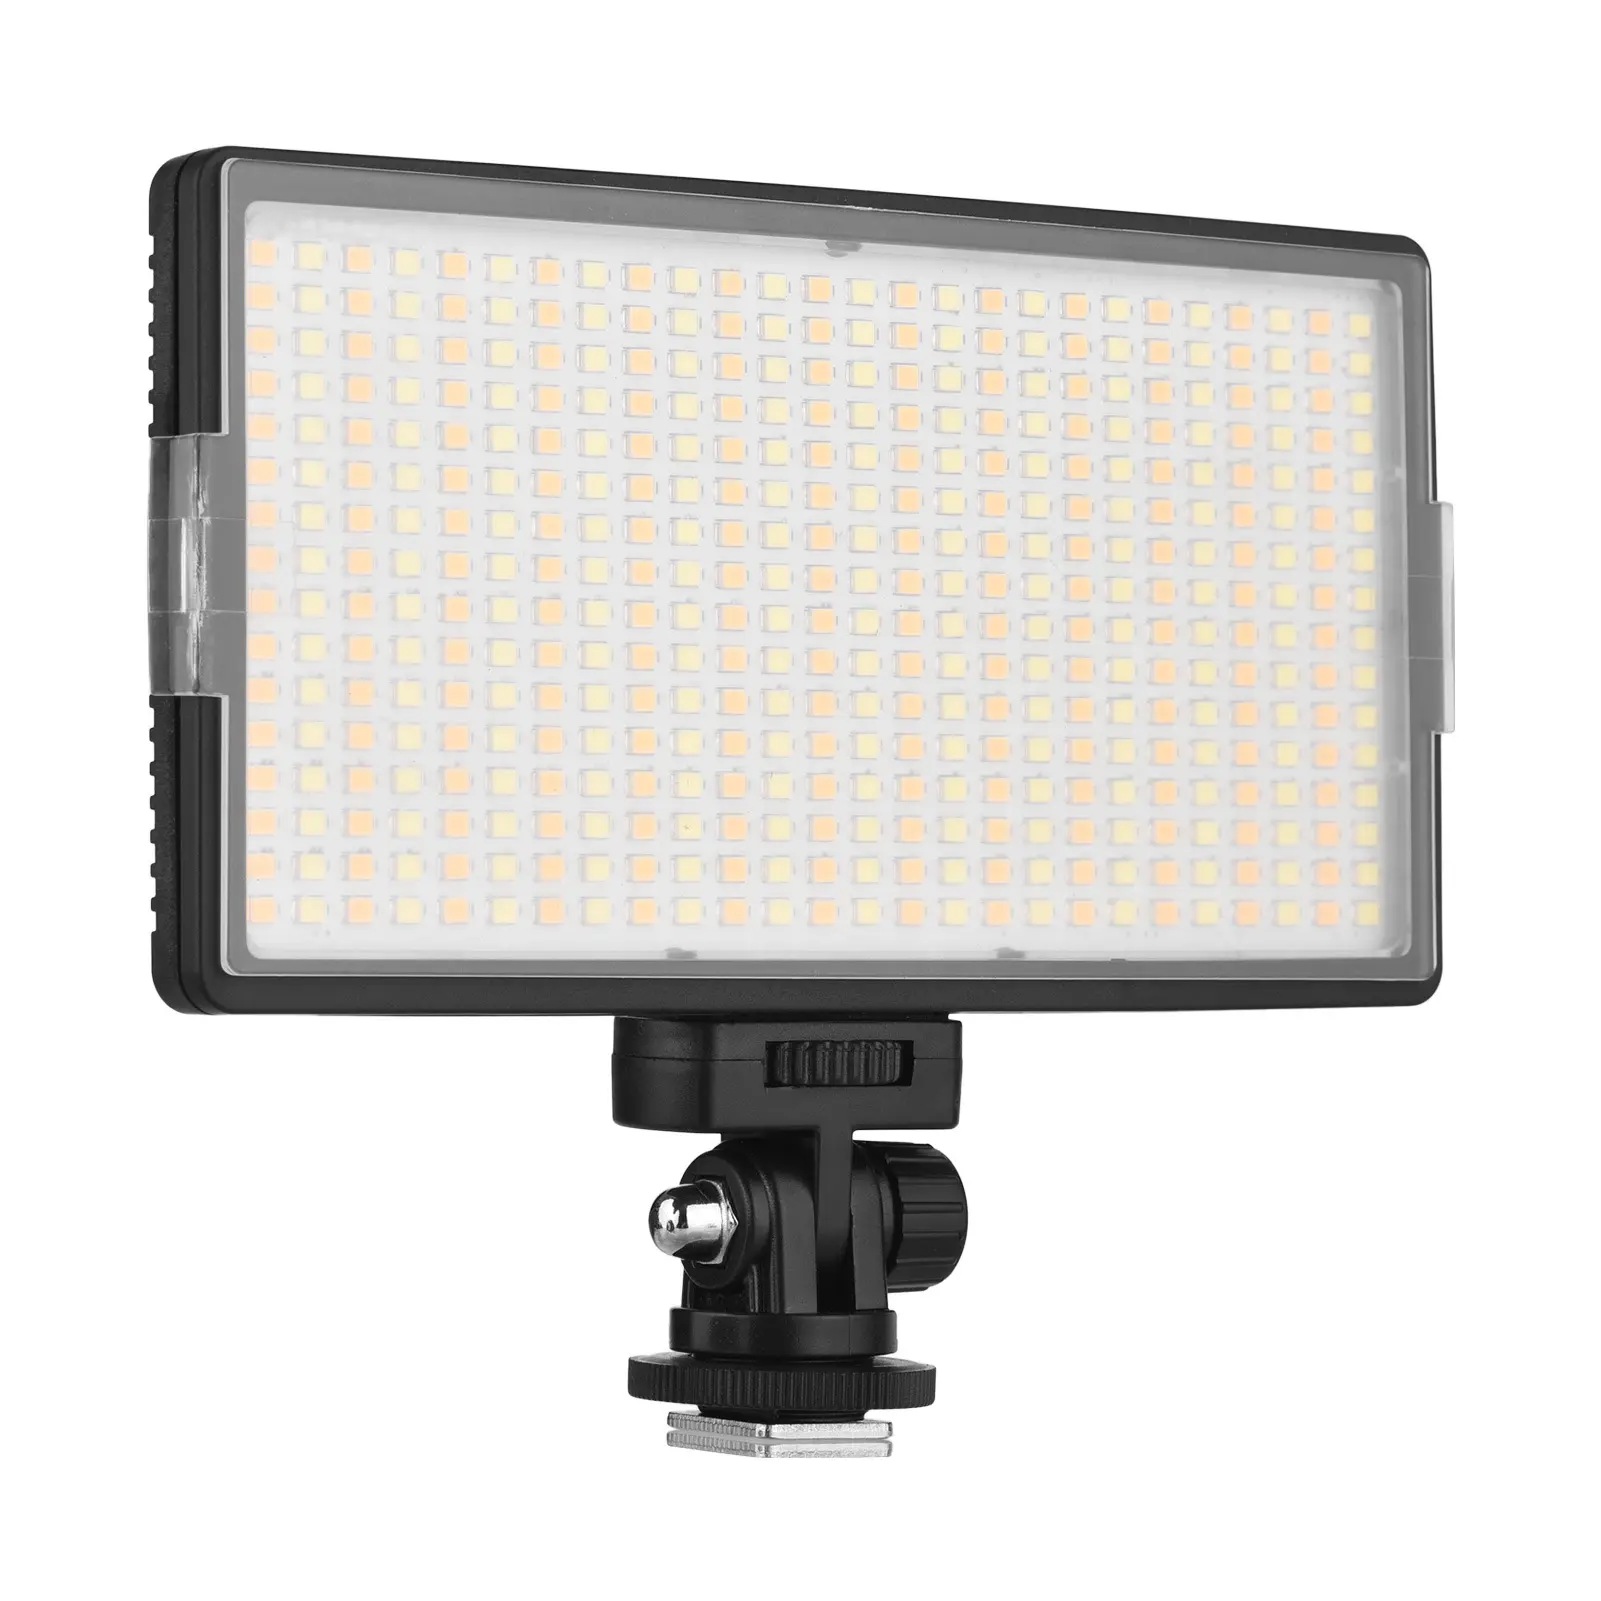 LED-416 LED Video Light Professional On-Camera Photography Light Panel 416PCS Bi-Color LEDs Temperature 3200-5600K